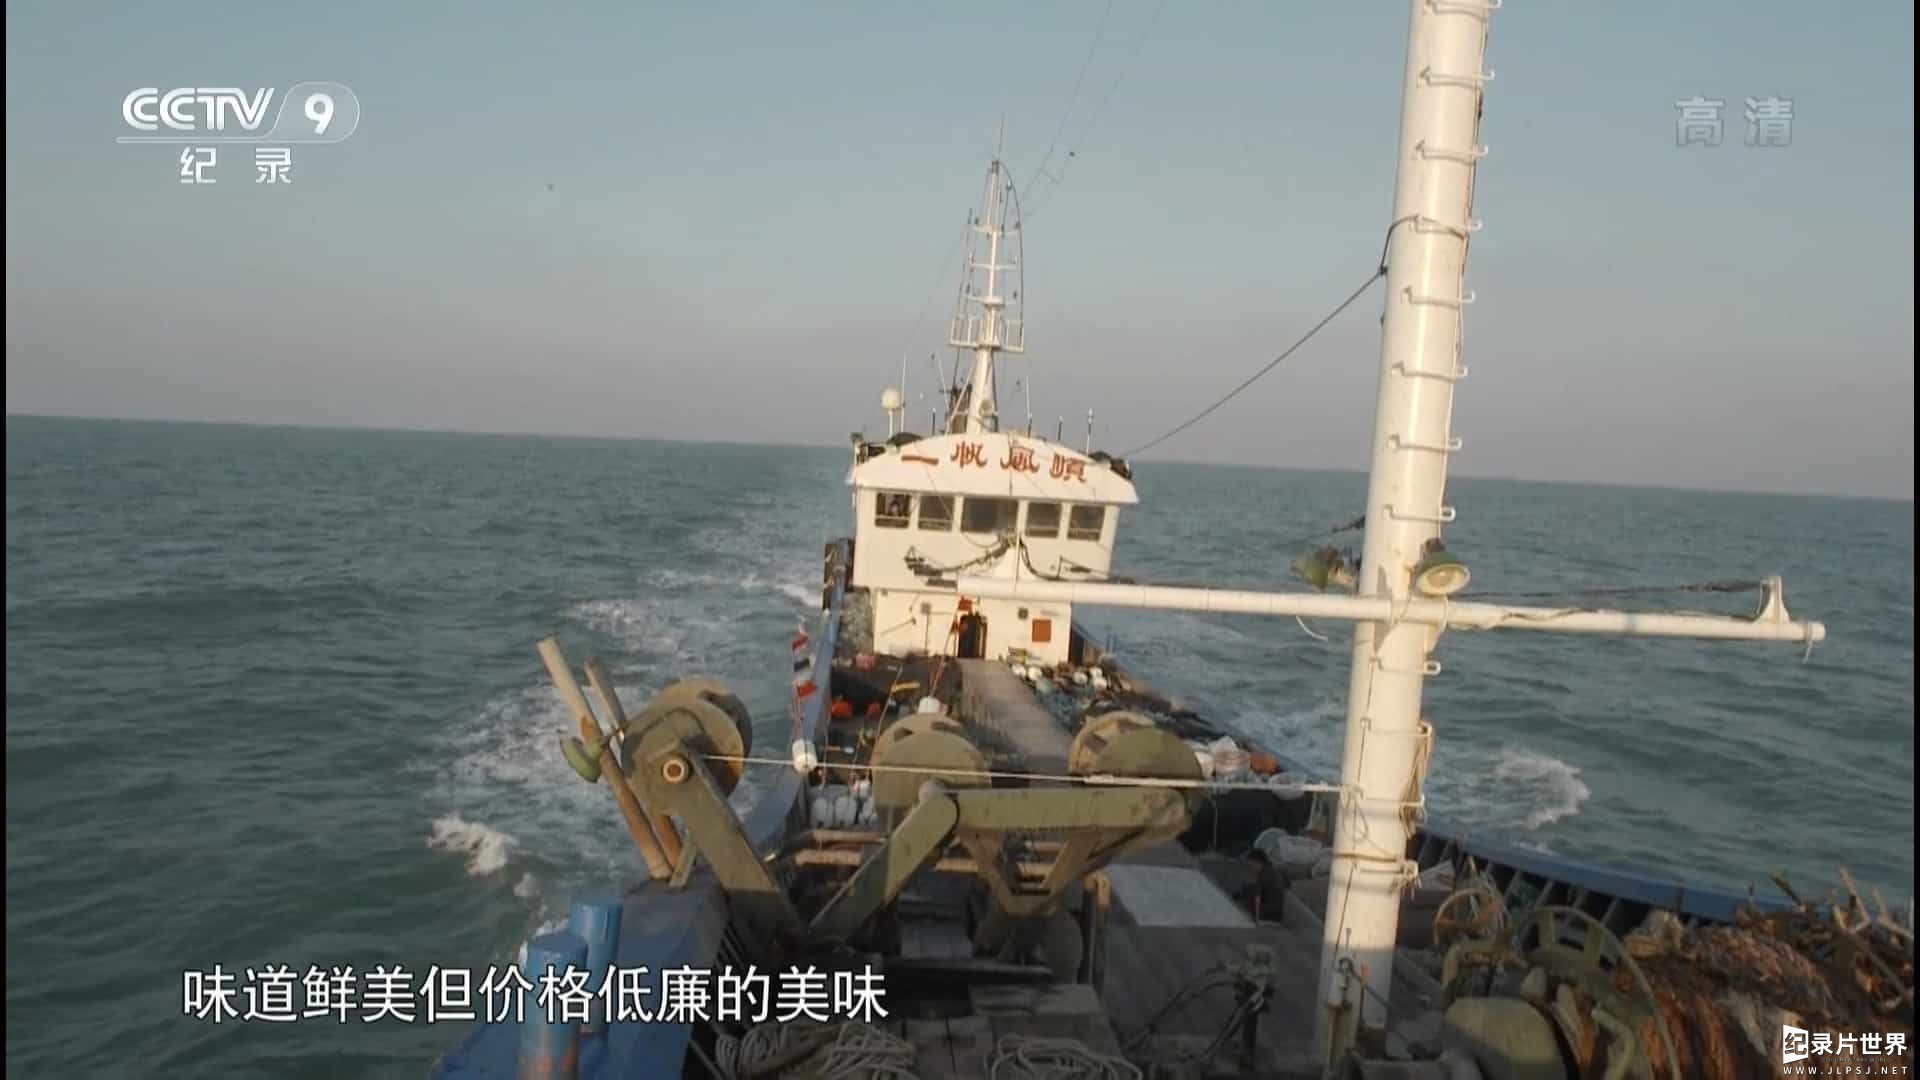  央视美食纪录片/中国美食系列《小海鲜 2015》2集全